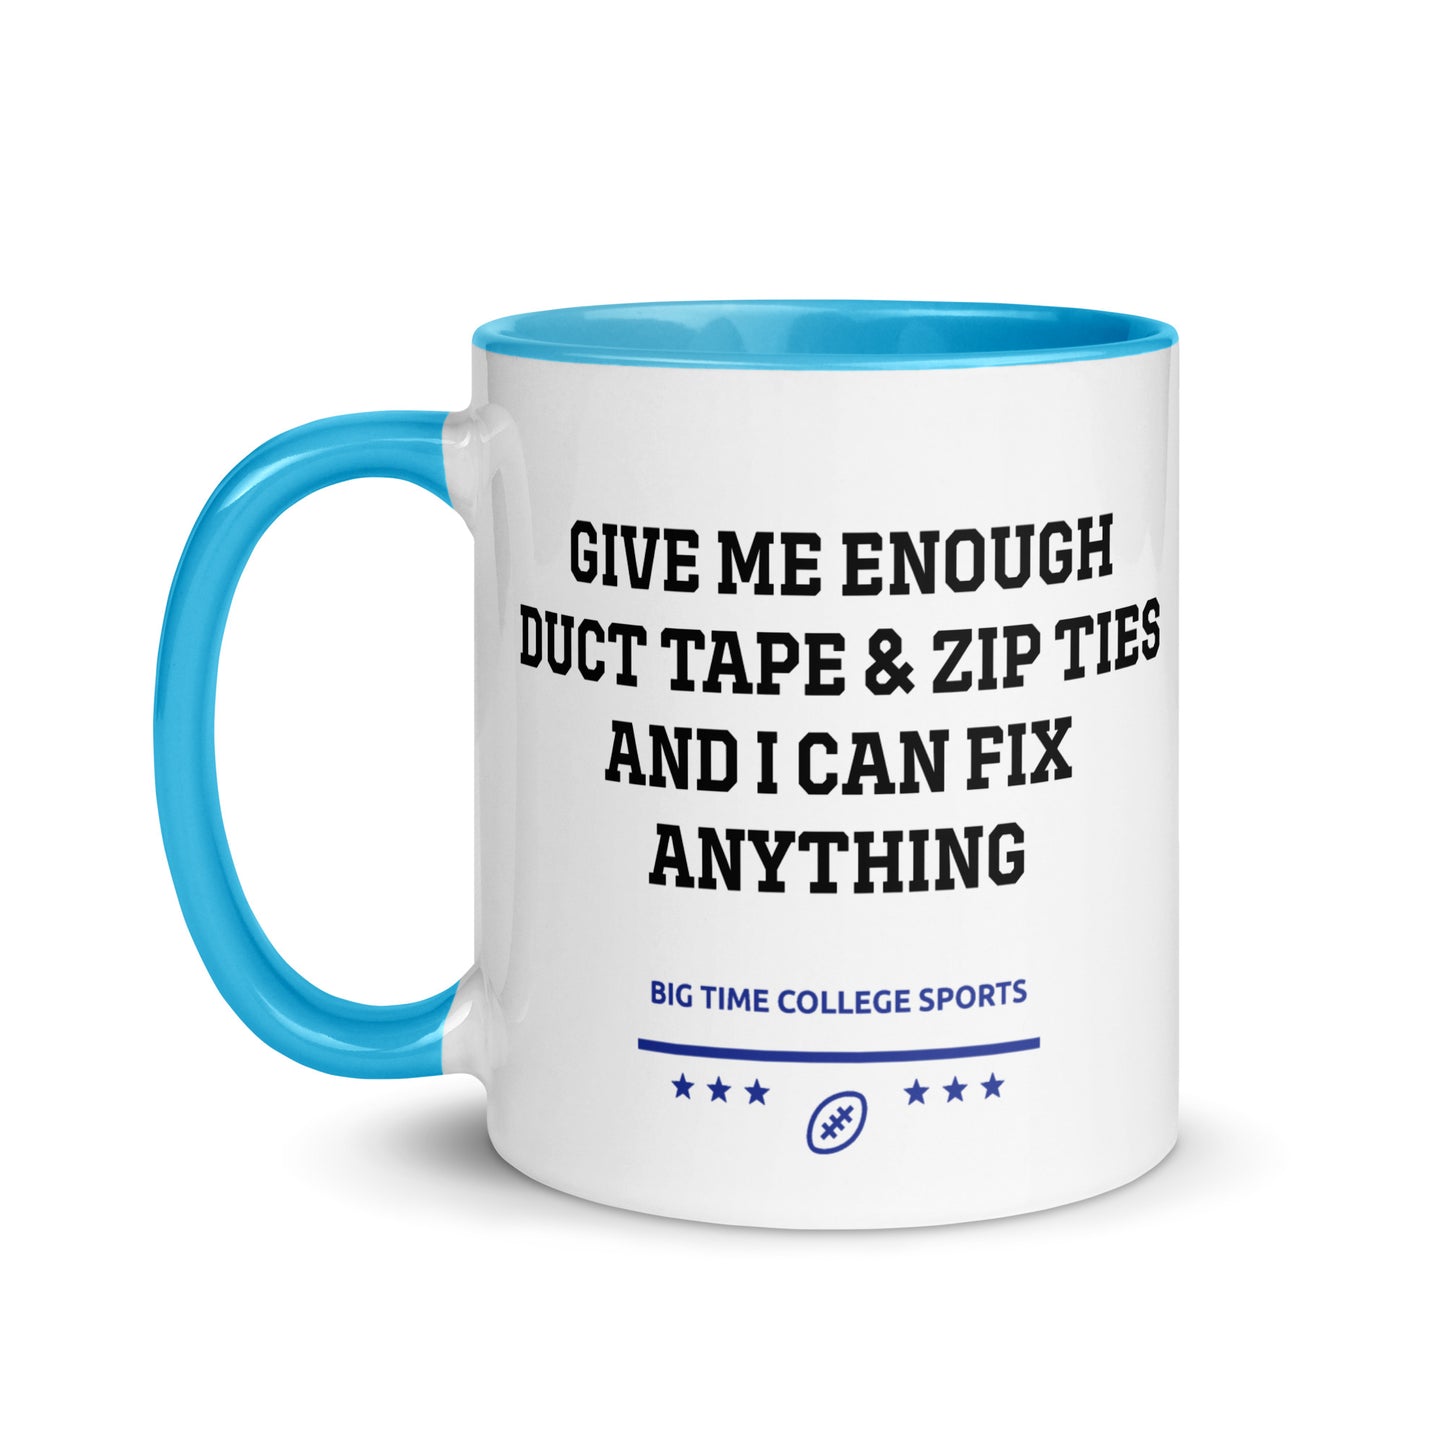 Duct Tape & Zip Ties Mug